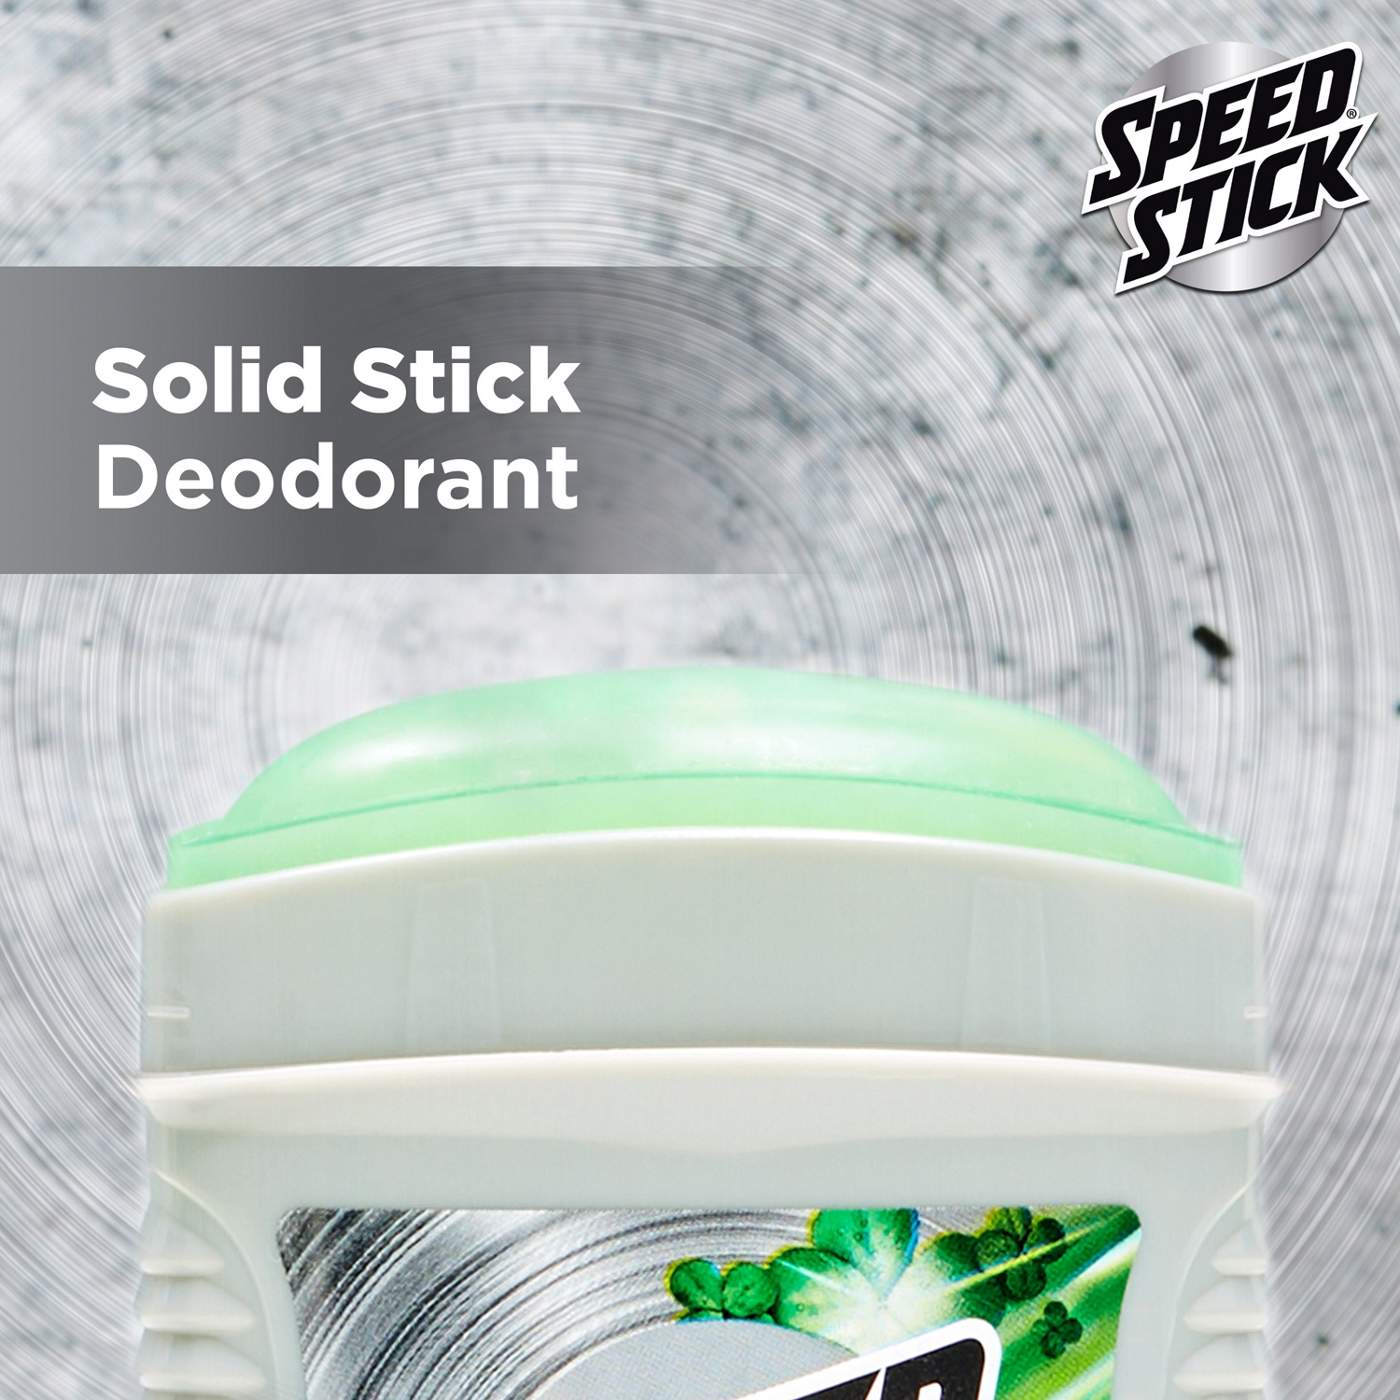 Speed Stick Irish Spring Trial Size Deodorant - Original; image 2 of 10